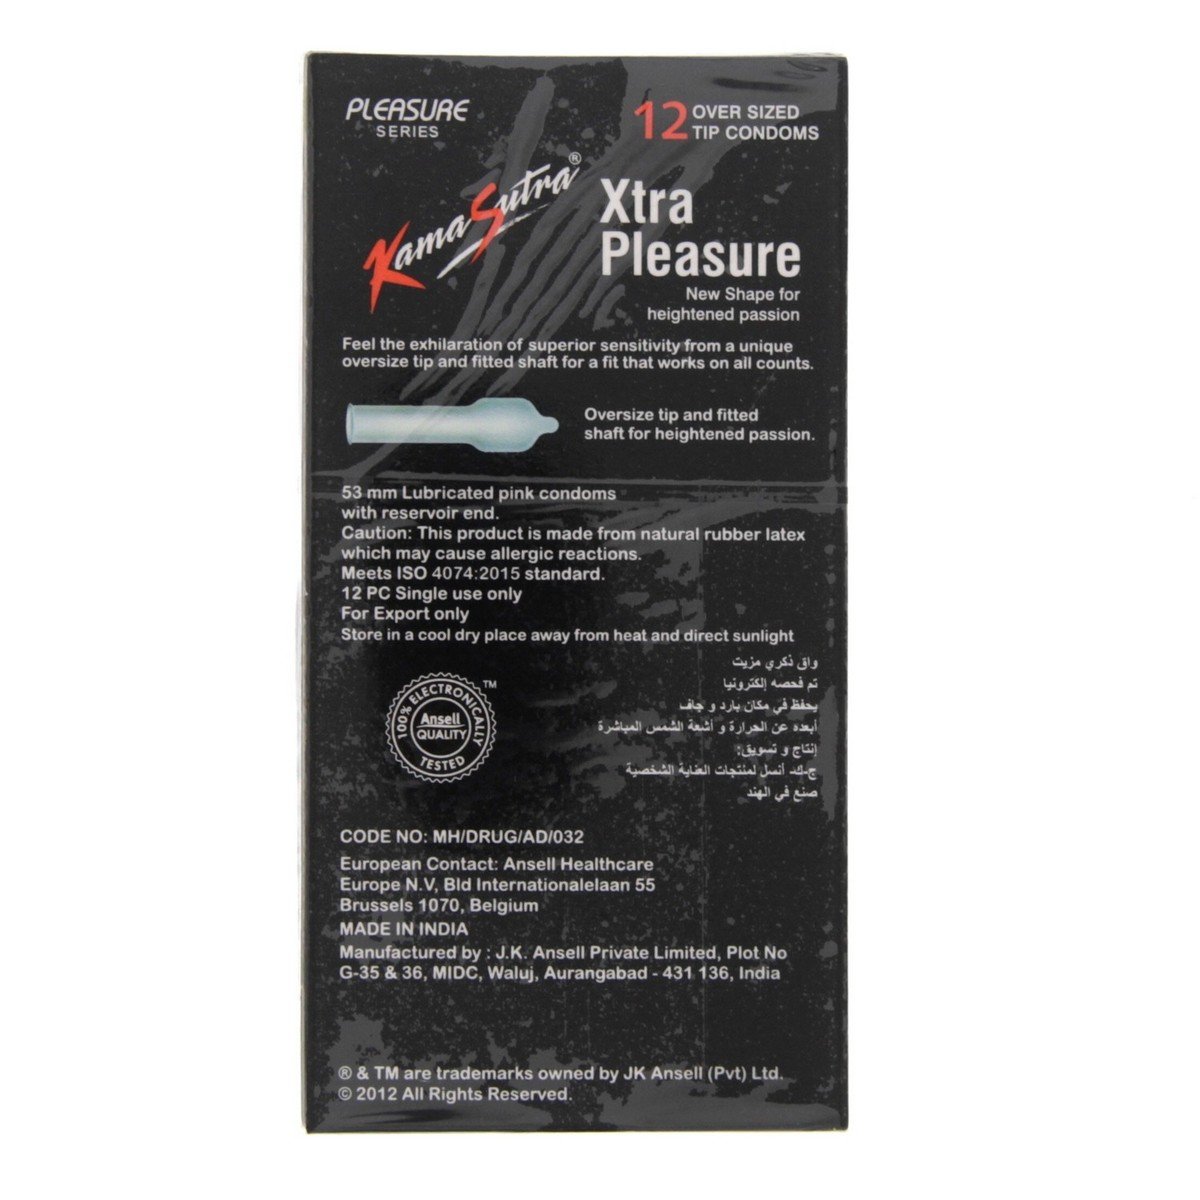 Kamasutra Xtra Pleasure Condoms 12pcs